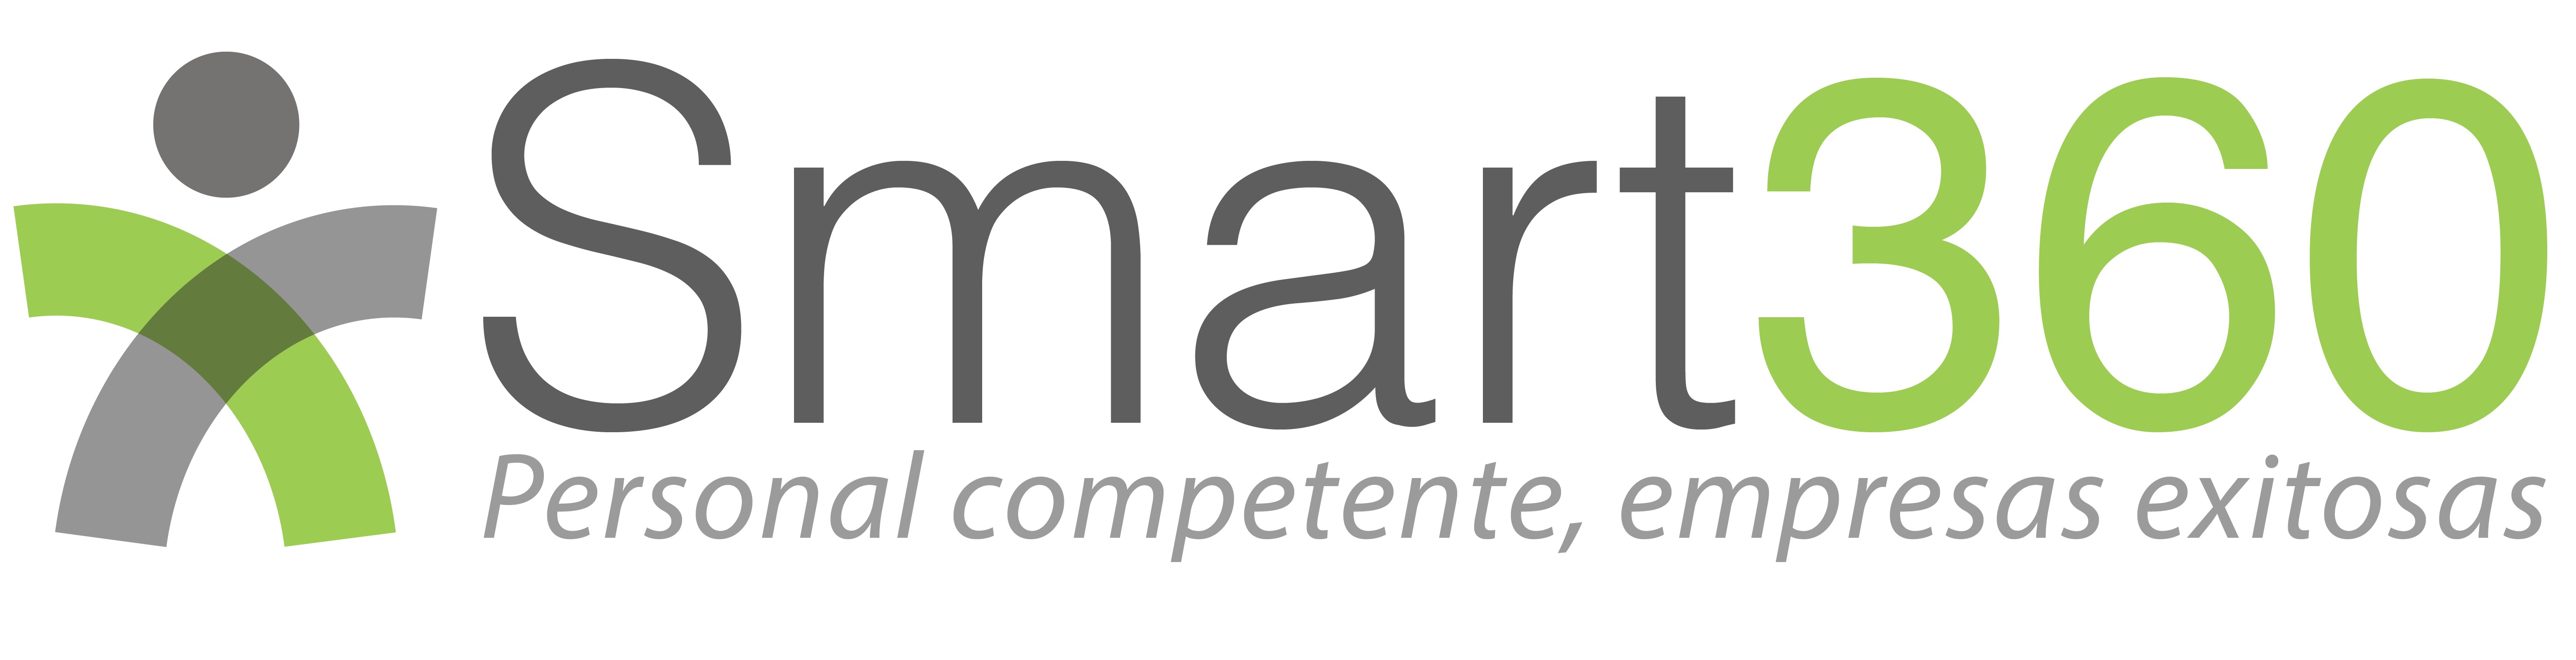 logo Software empresarial para evaluaciones 360 online